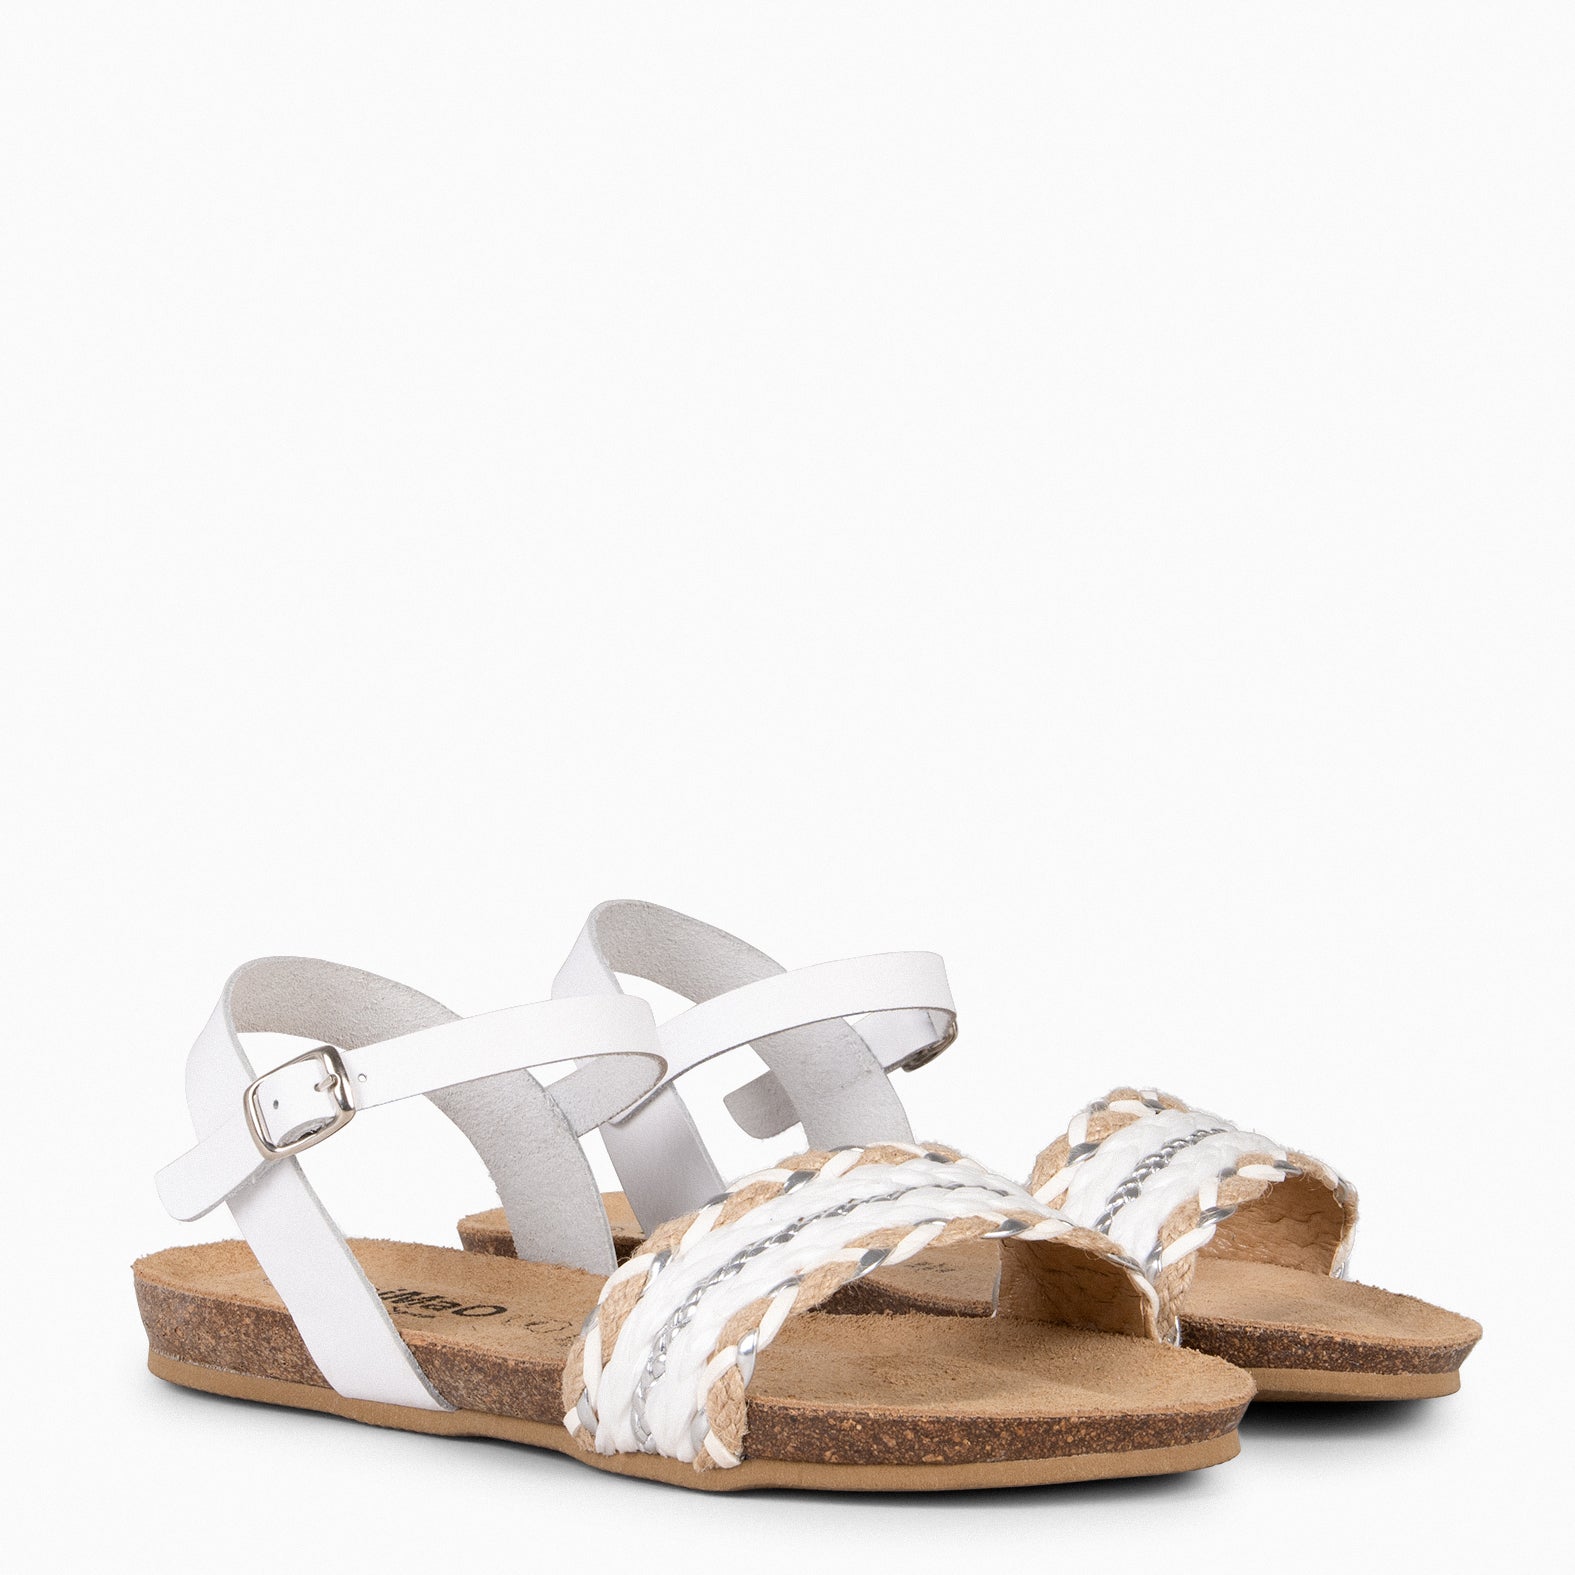 GARDENIA – WHITE BIO Sandals with multimaterial strap